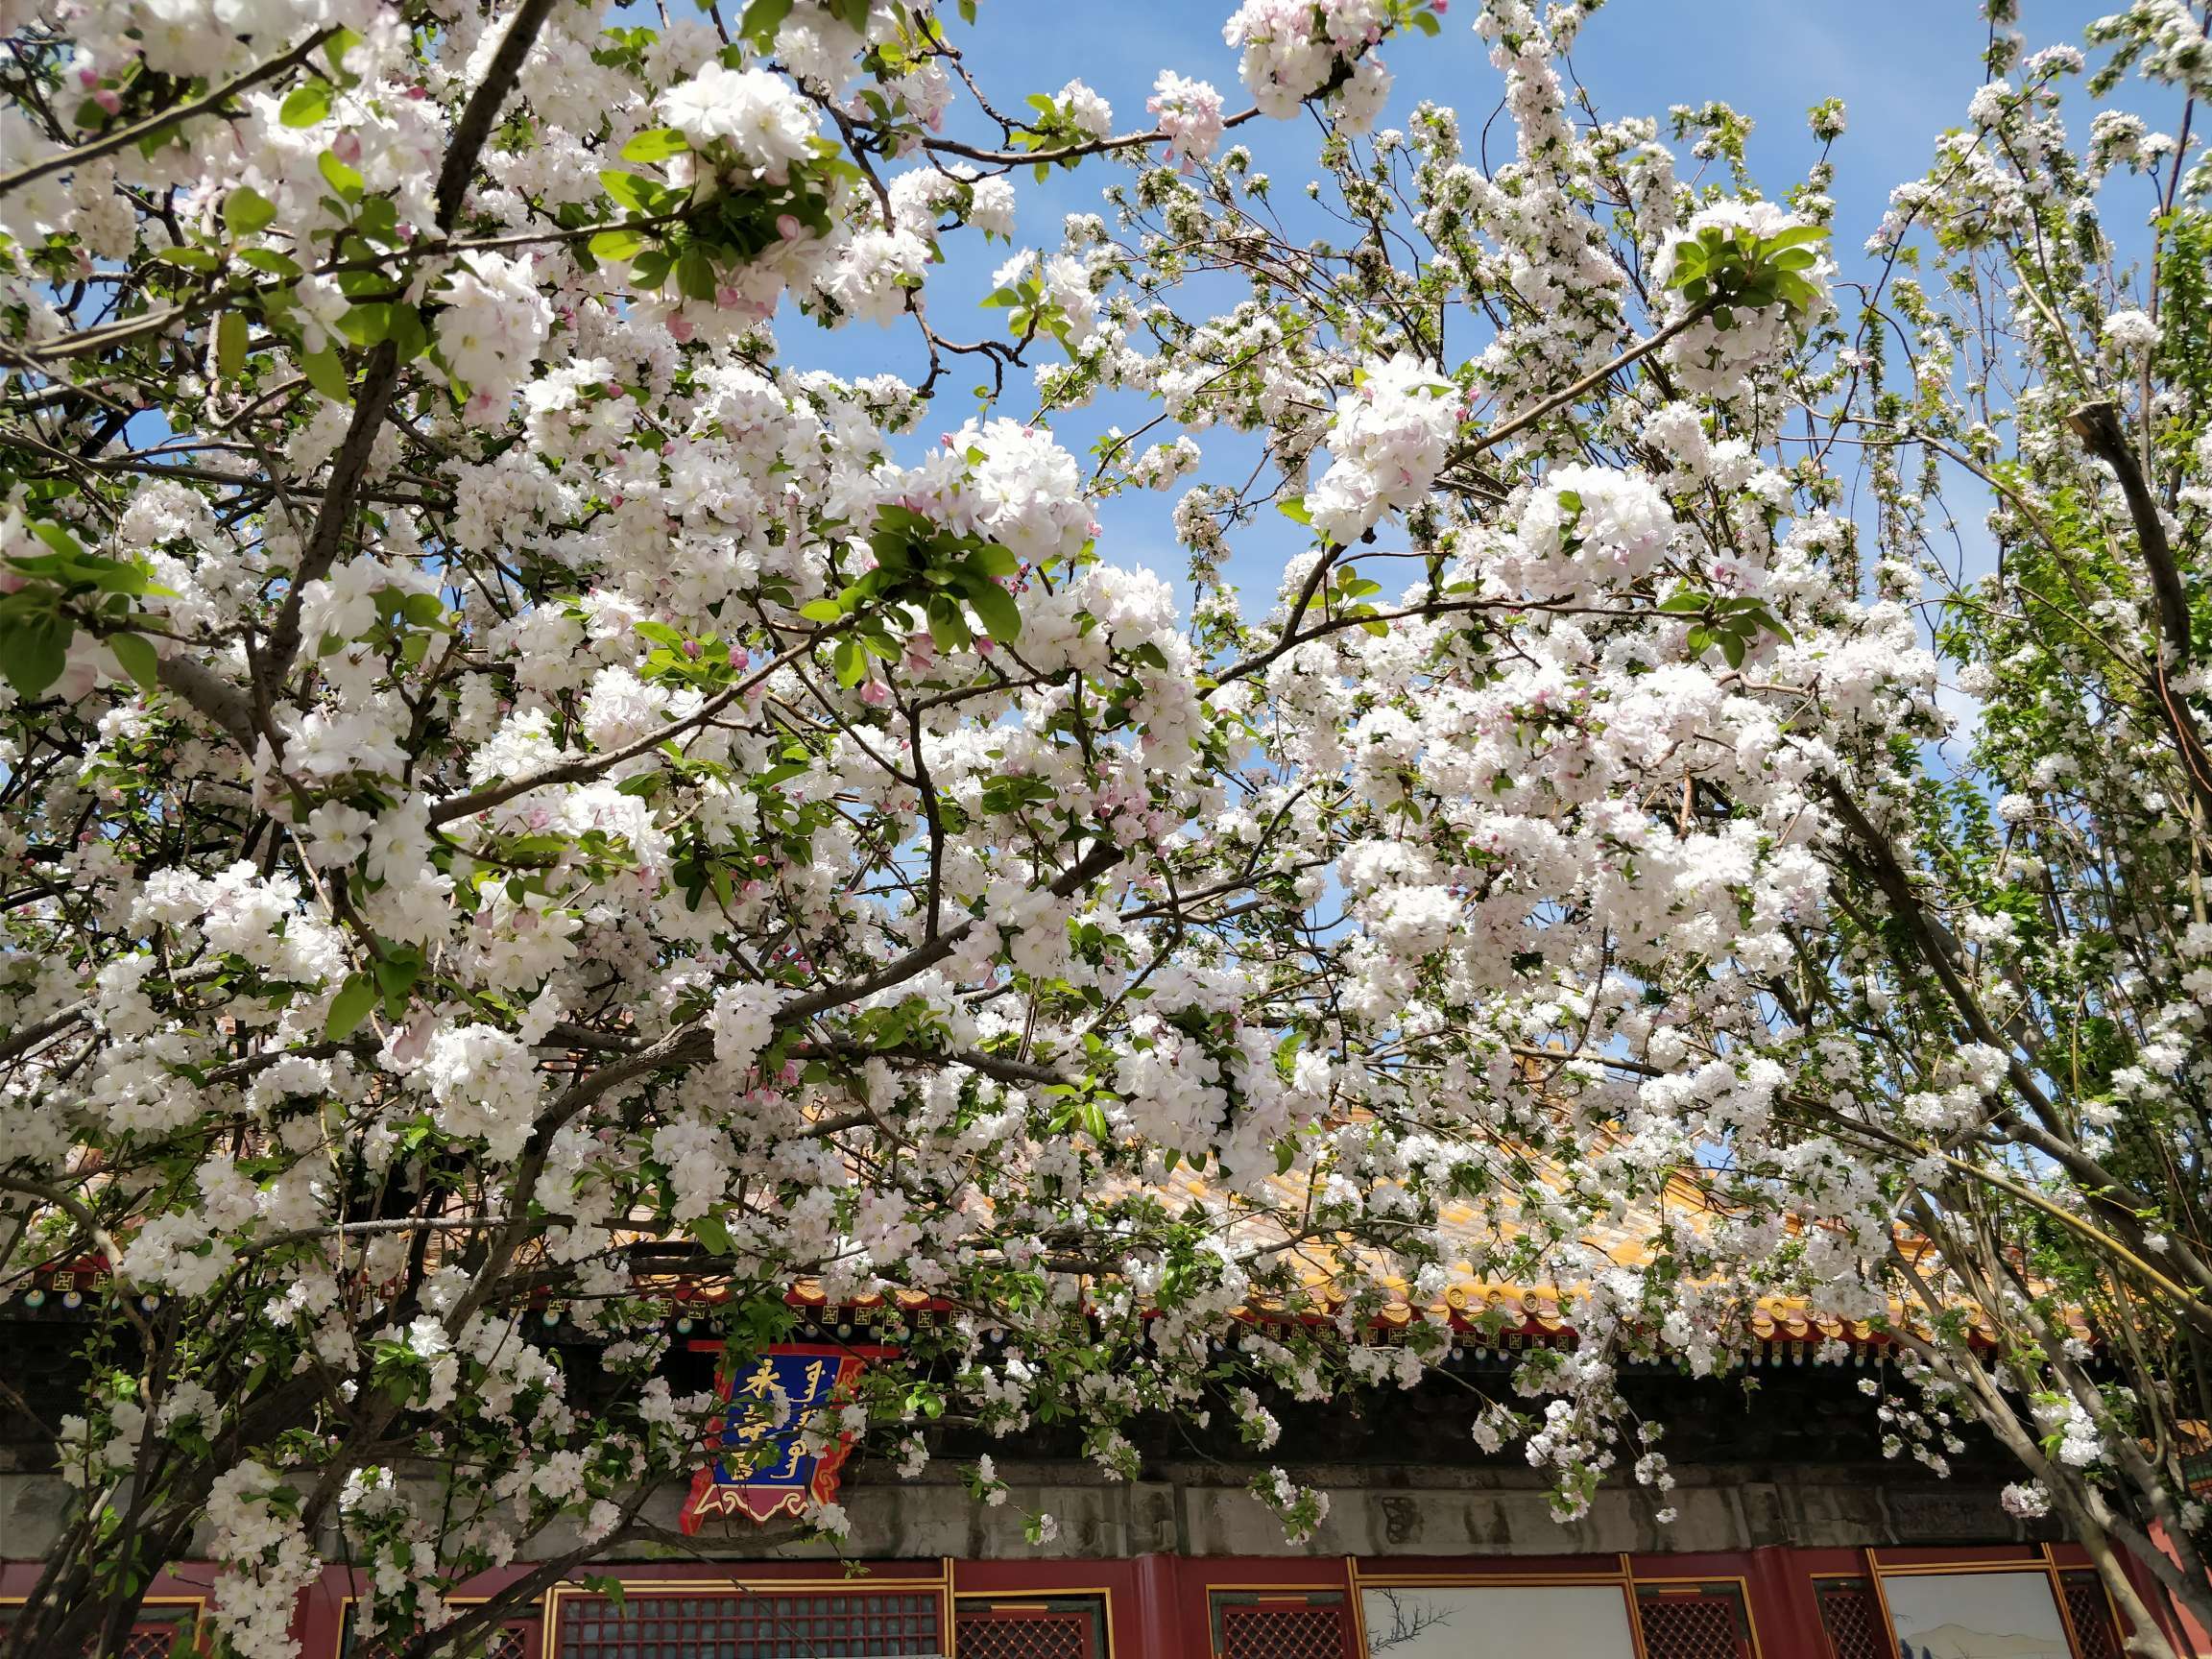 故宫永寿宫的西府海棠,真是了不得的花树这么多年了,终于看到了